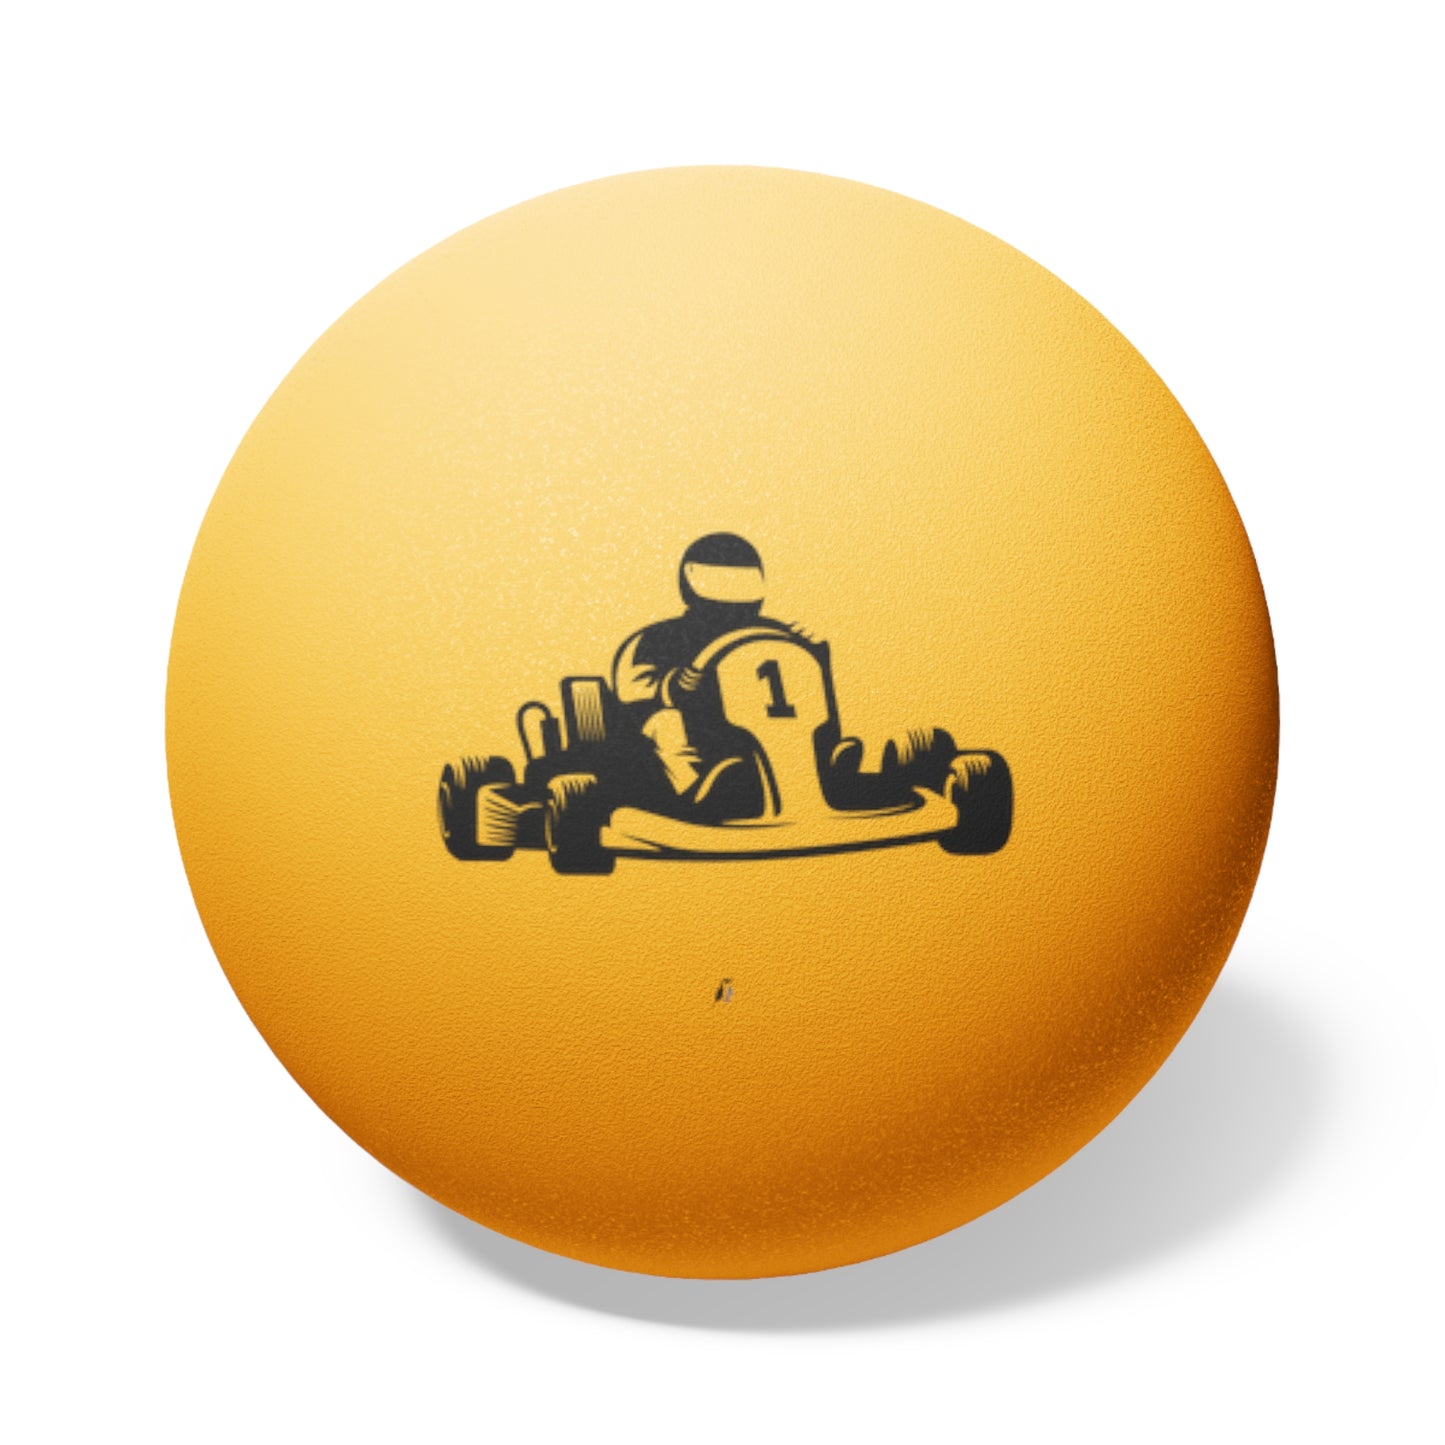 Ping Pong Balls, 6 pcs: Racing